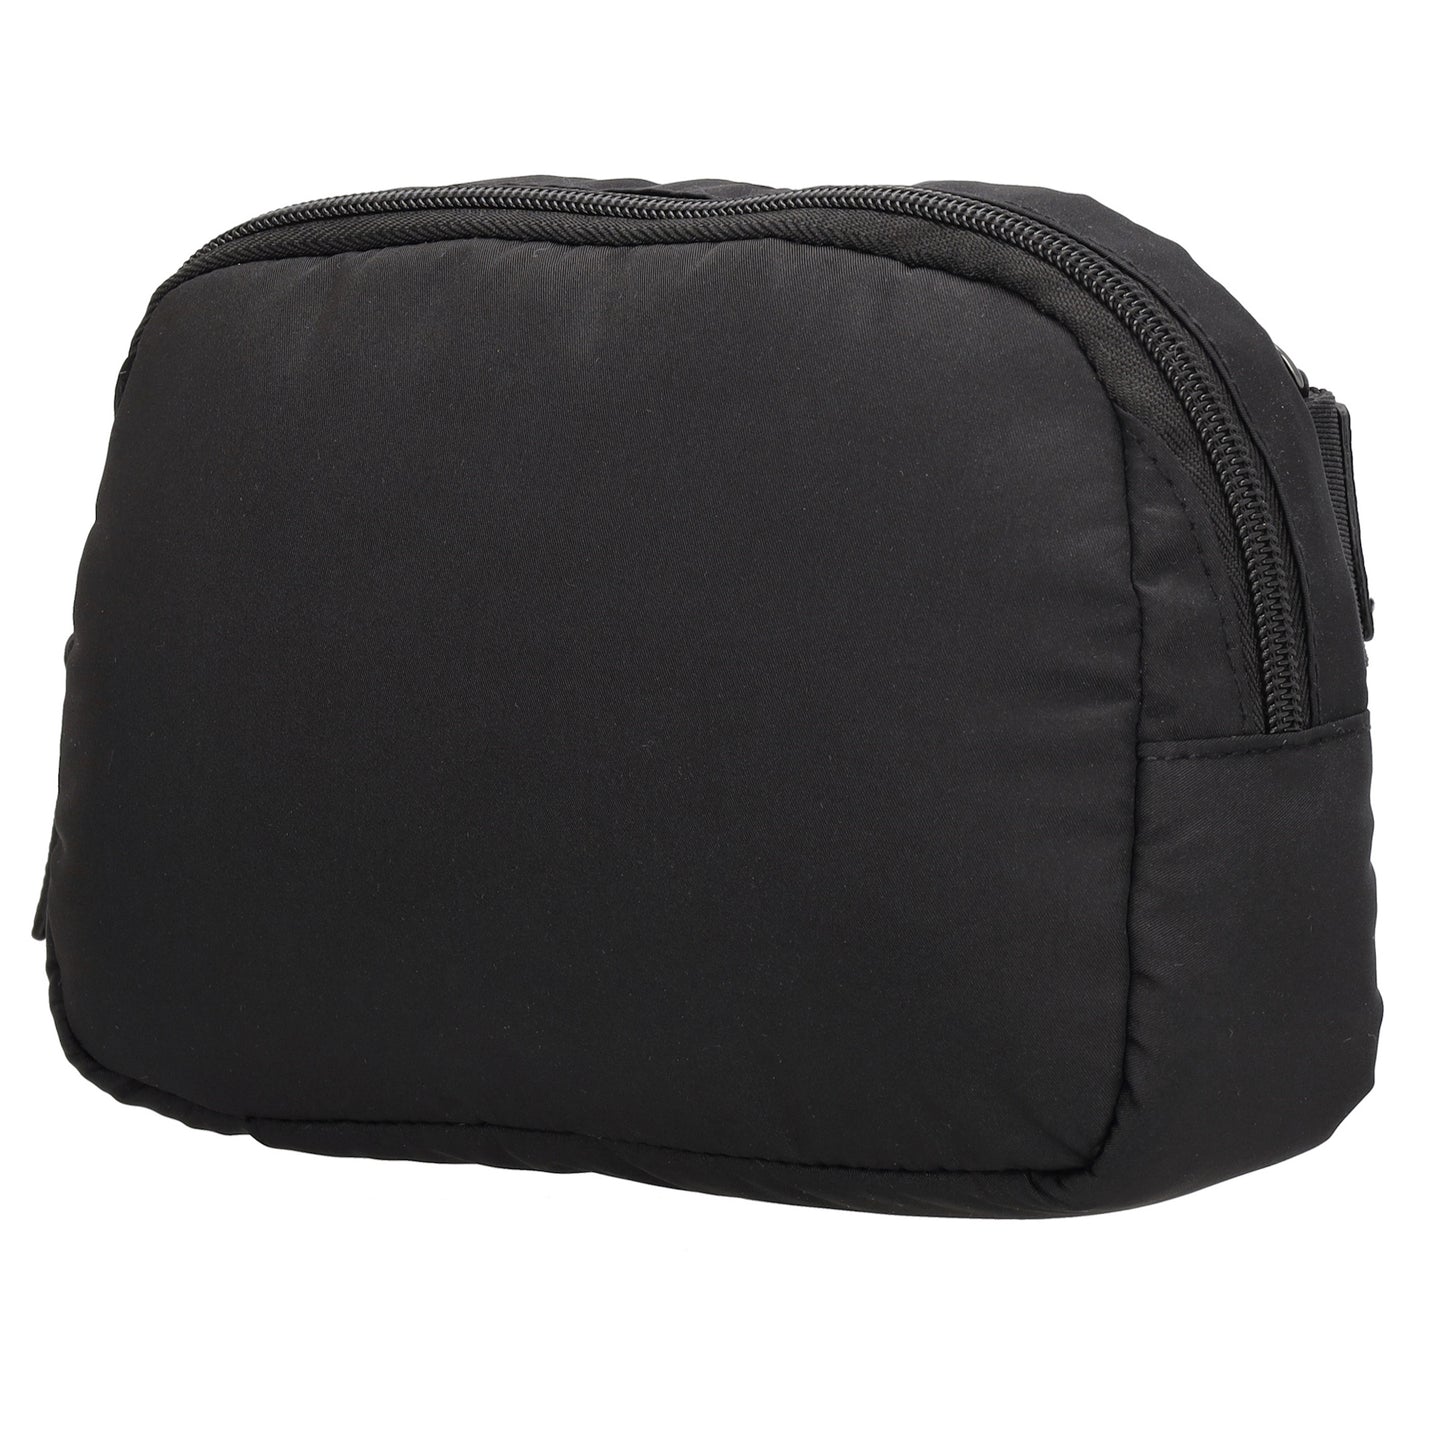 Bodybag|Gürteltasche 19,5 x 14cm in Schwarz wattiert